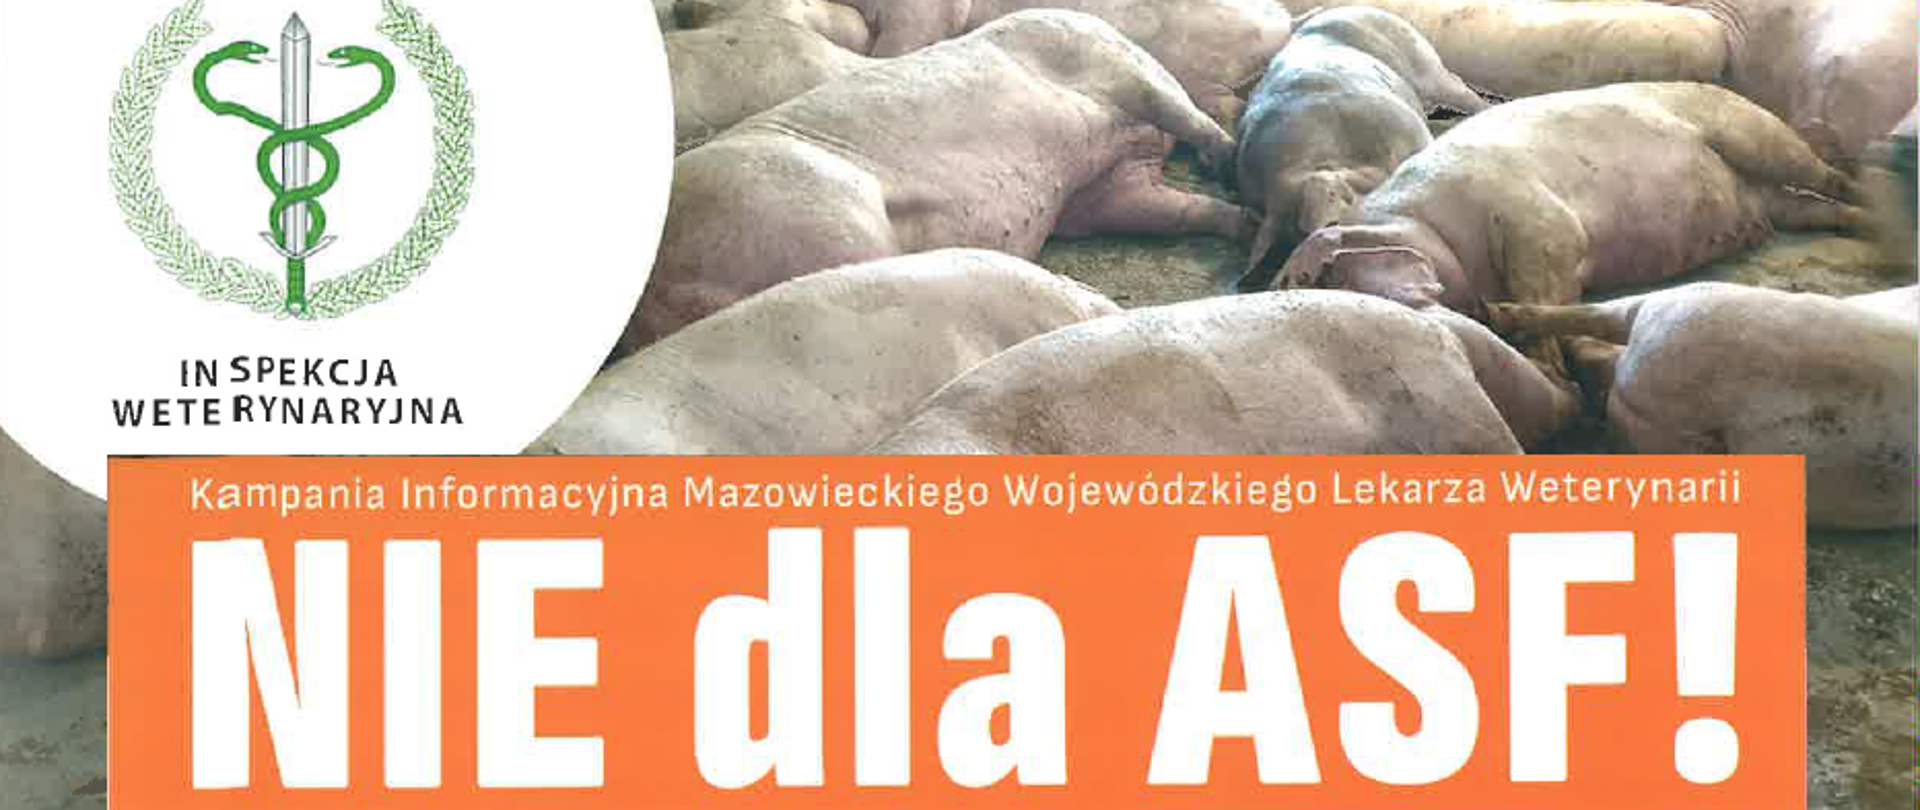 Kampania informacyjna Mazowieckiego Wojewódzkiego Lekarza Weterynarii NIE dla ASF! Zdjęcie leżących świń, z lewej strony logo Inspekcji Weterynaryjnej - 2 węże oplatające miecz